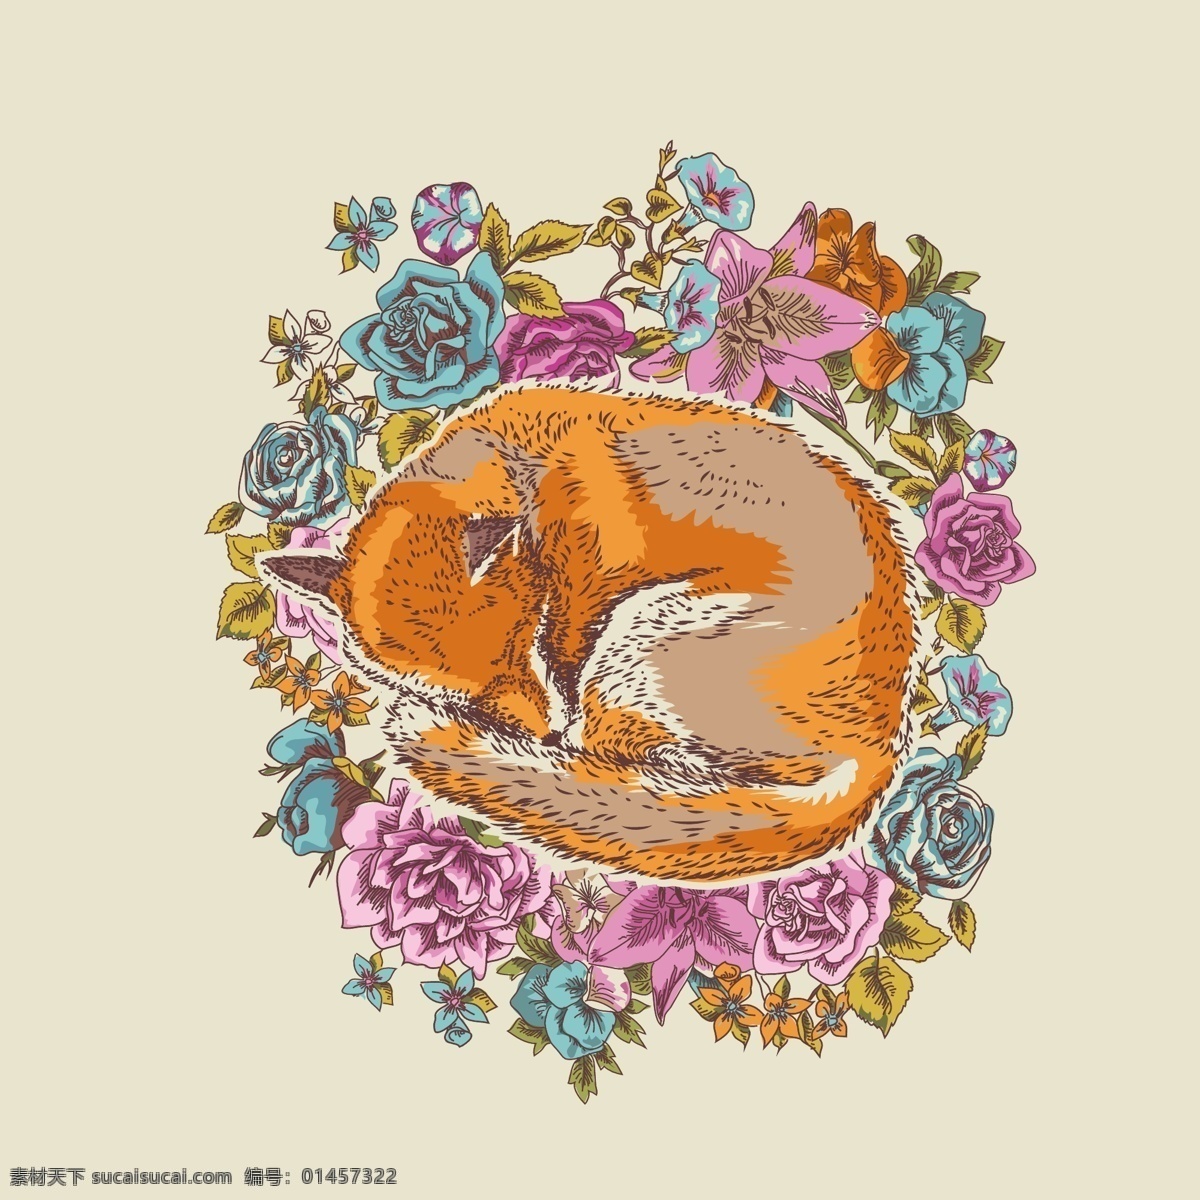 印花 矢量图 动物 服装图案 狐狸 卡通 印花矢量图 植物 面料图库 服装设计 图案花型